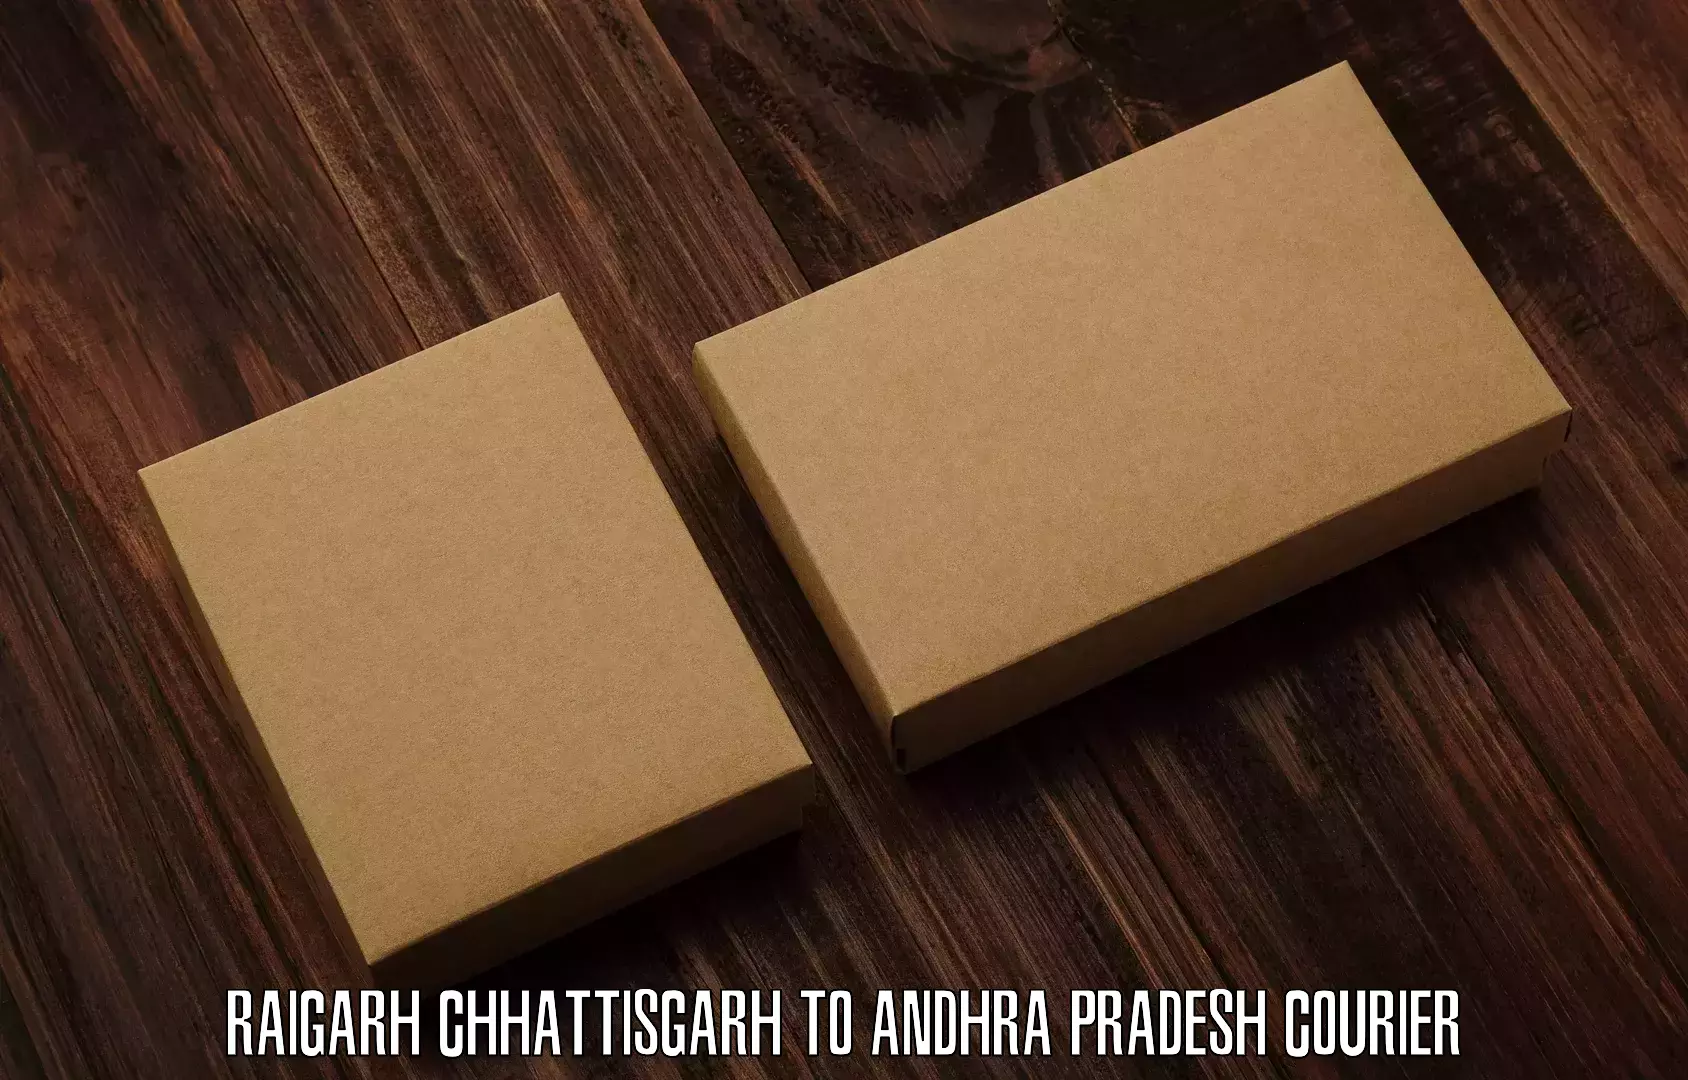 User-friendly courier app Raigarh Chhattisgarh to Nandikotkur